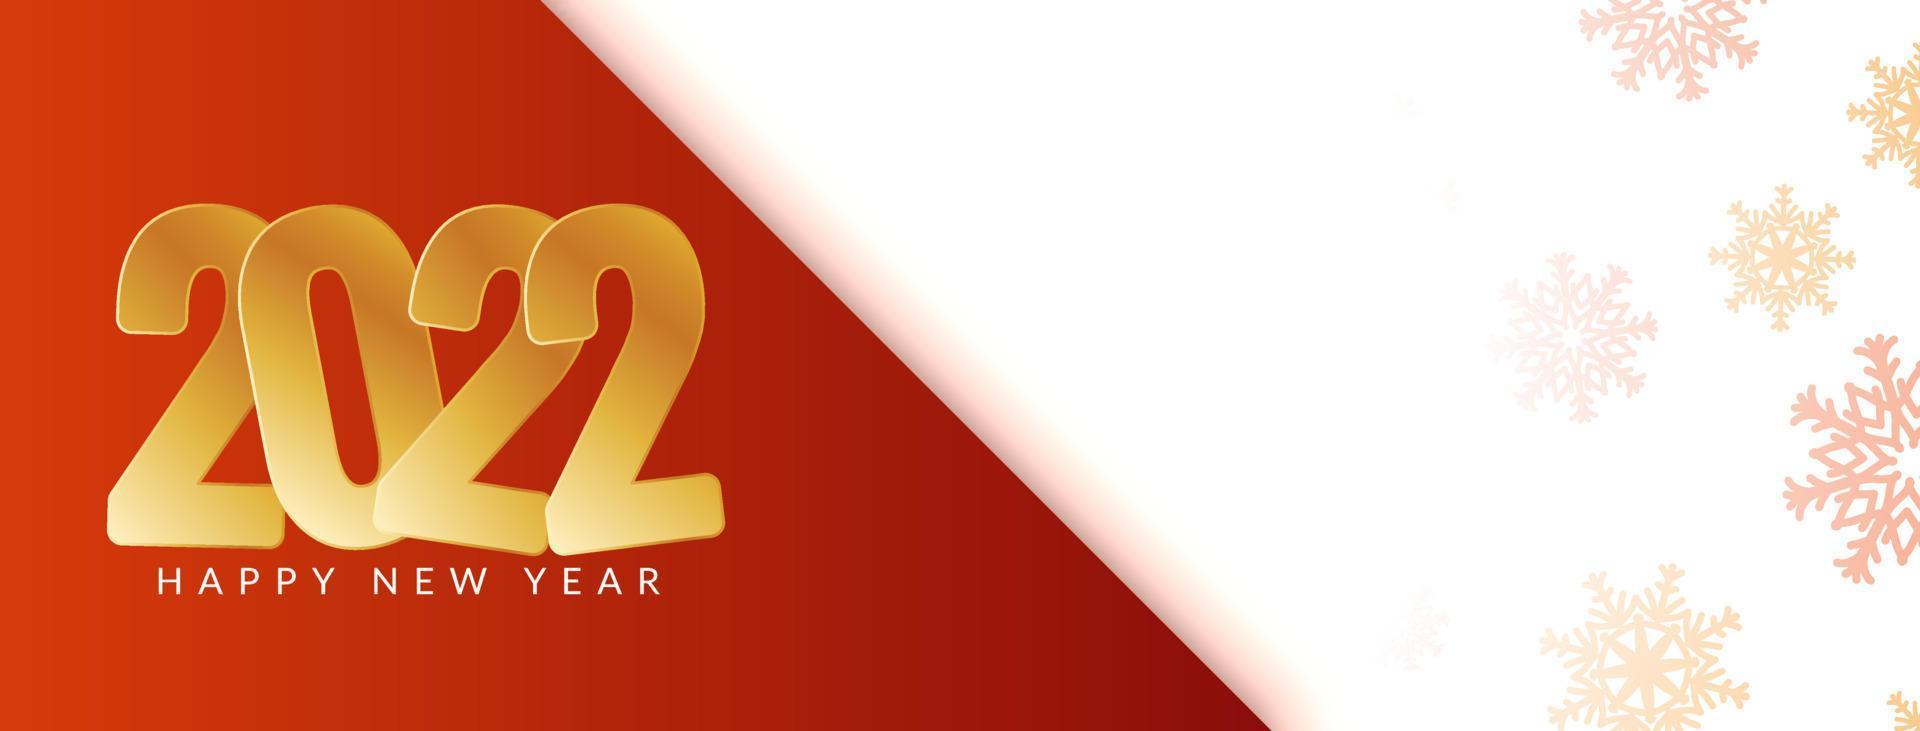 felice anno nuovo 2022 testo dorato elegante banner design vettore